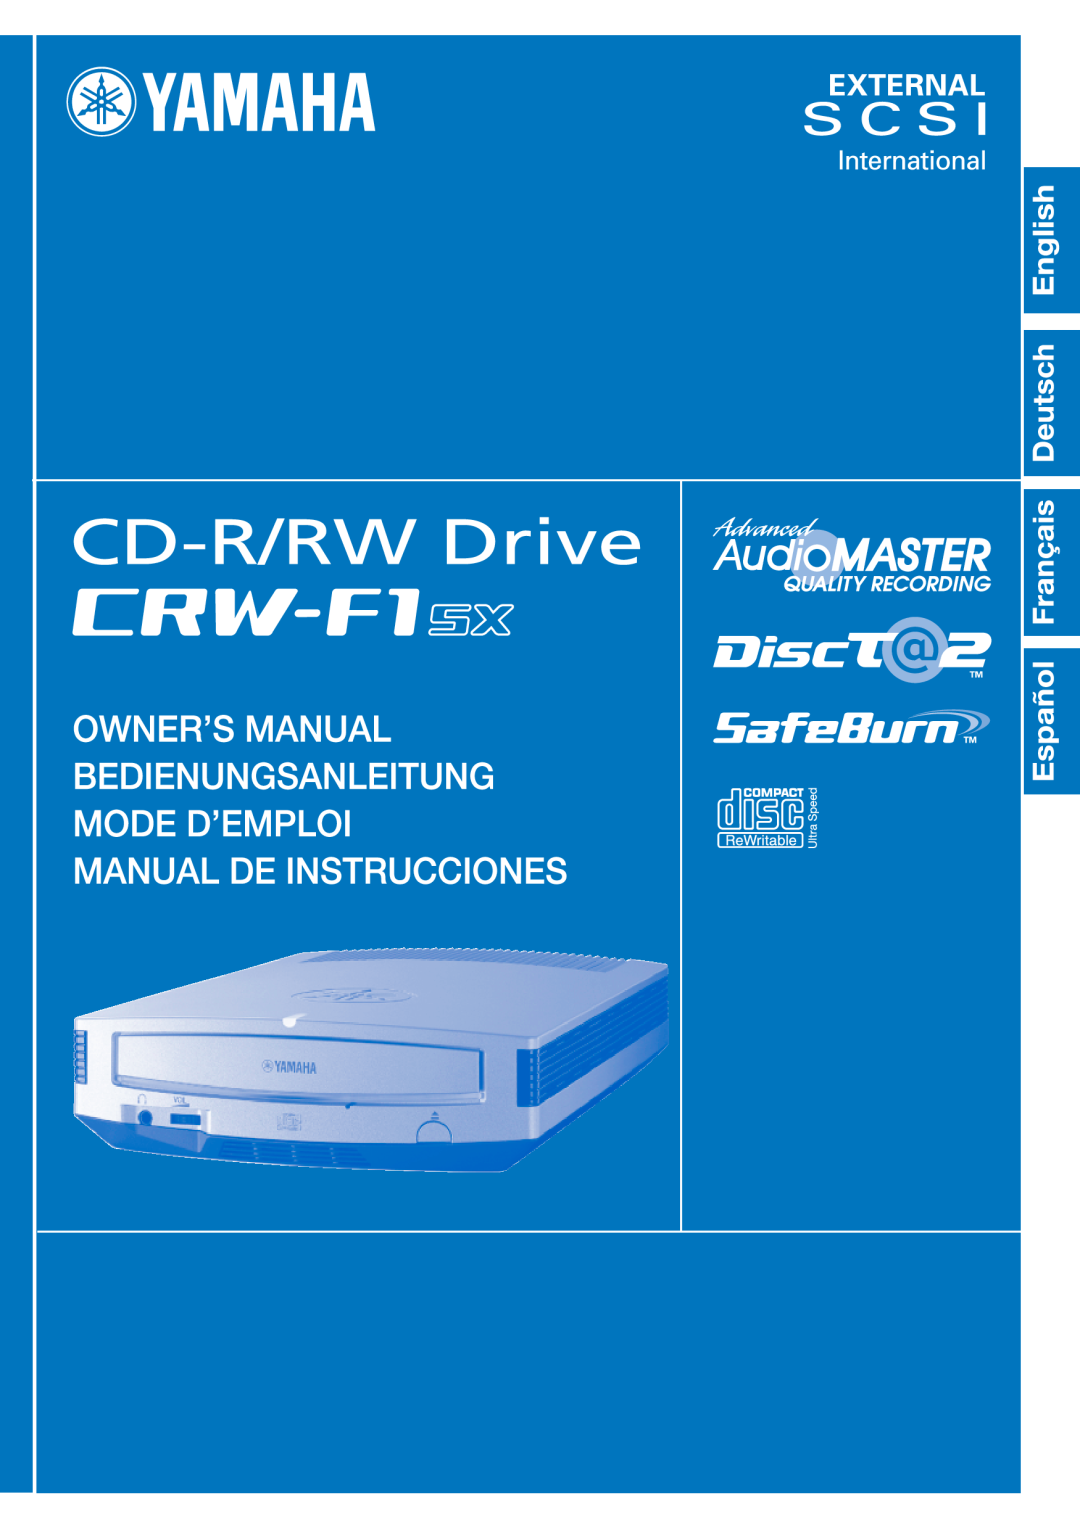 Yamaha CRW-F1SX manual 